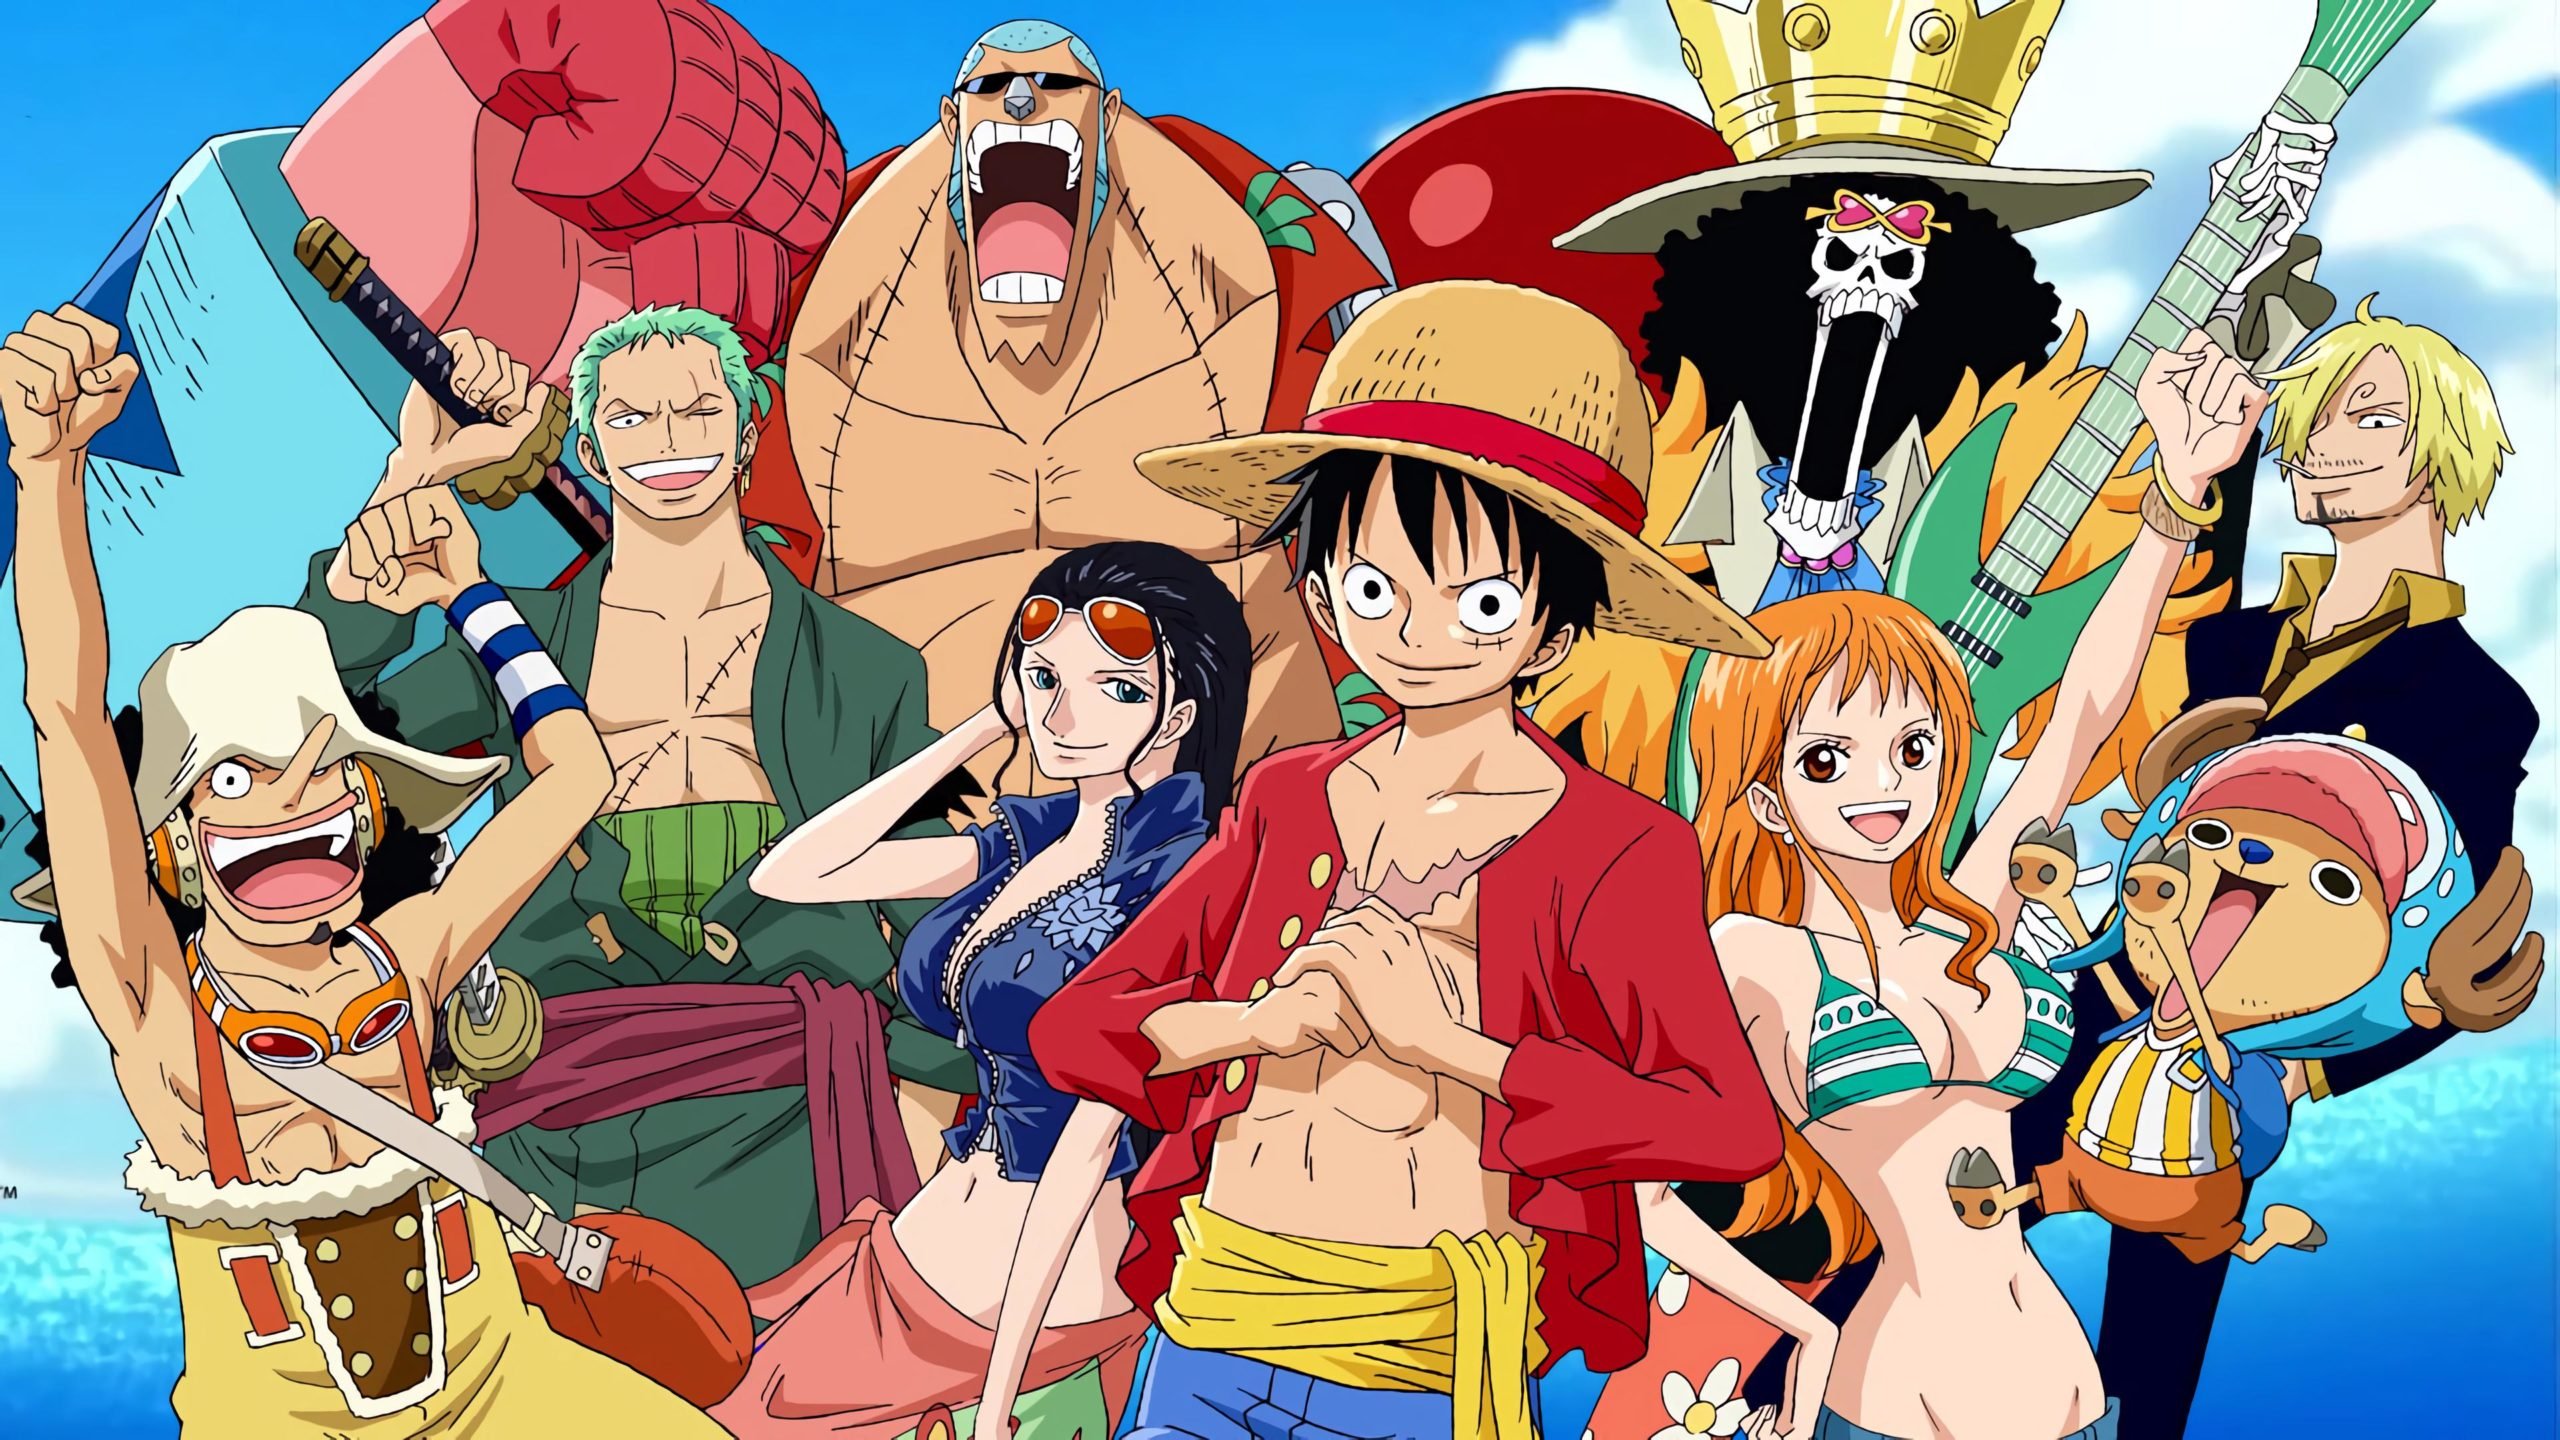 Silvio Santos em One Piece? Nova dublagem surpreende fãs do anime